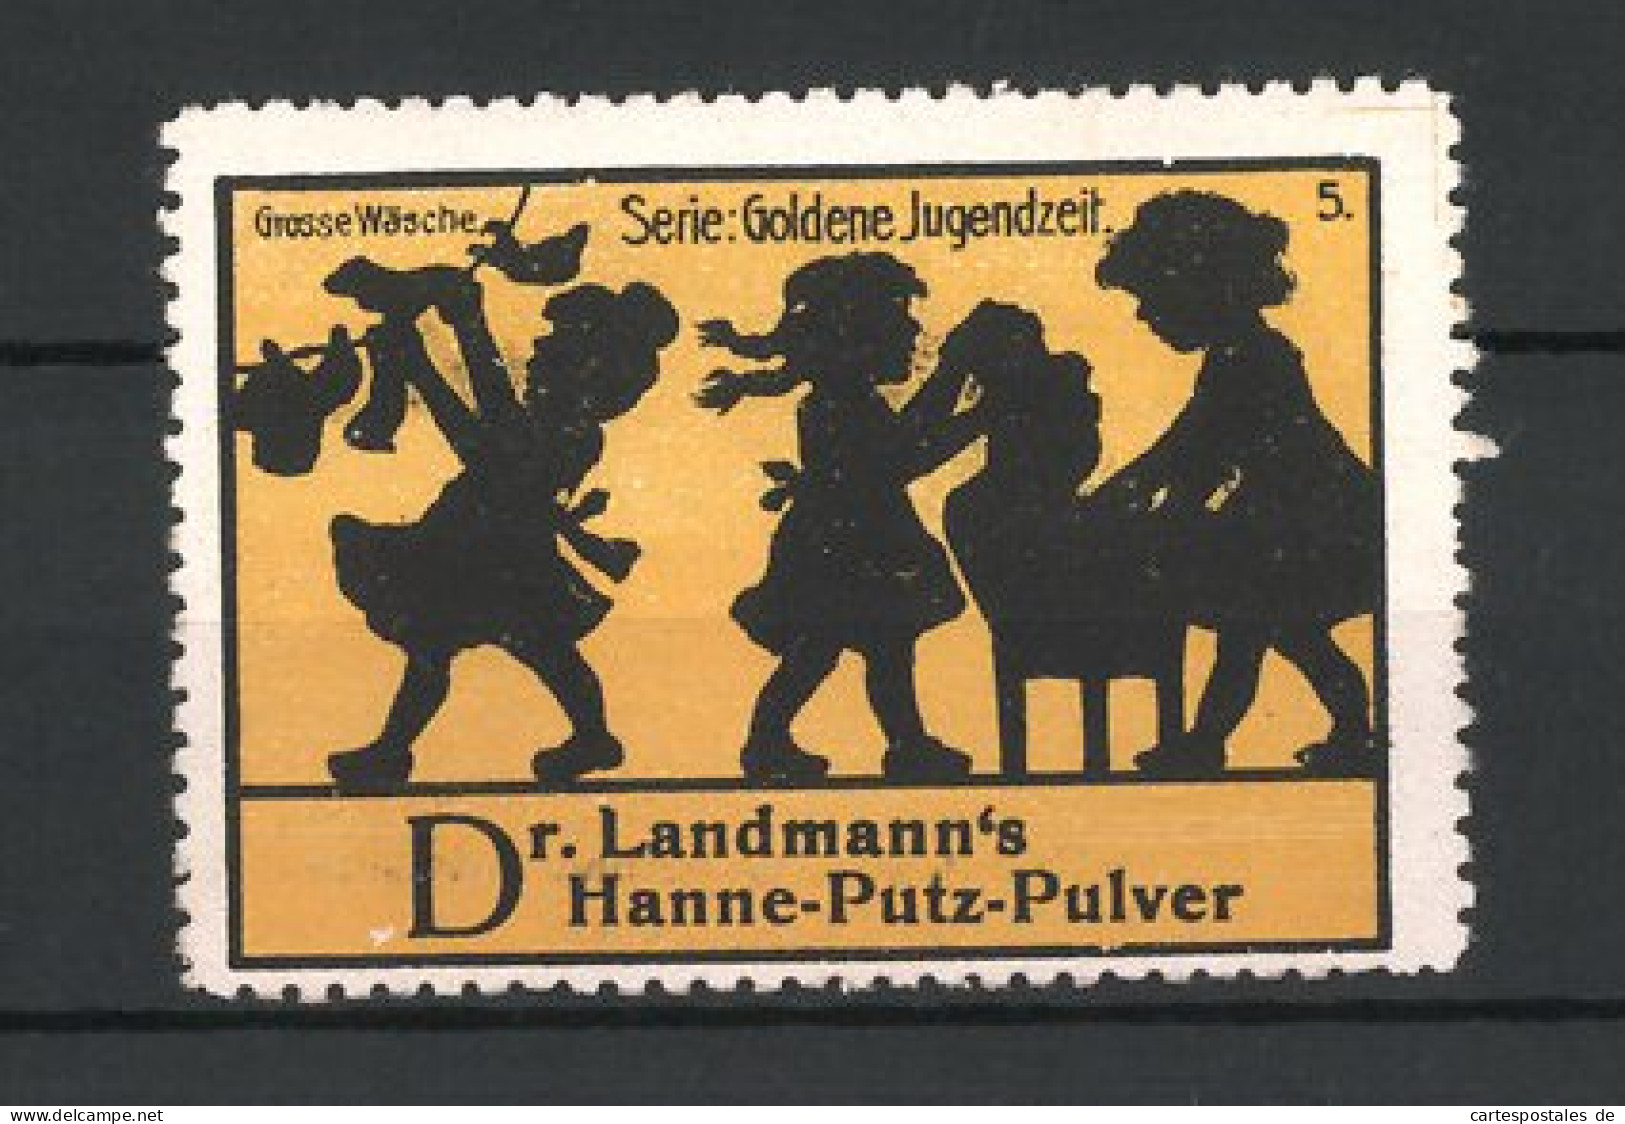 Reklamemarke Dr. Lahmann's Hanne-Putz-Pulver, Serie: Goldene Jugendzeit, Grosse Wäsche  - Cinderellas